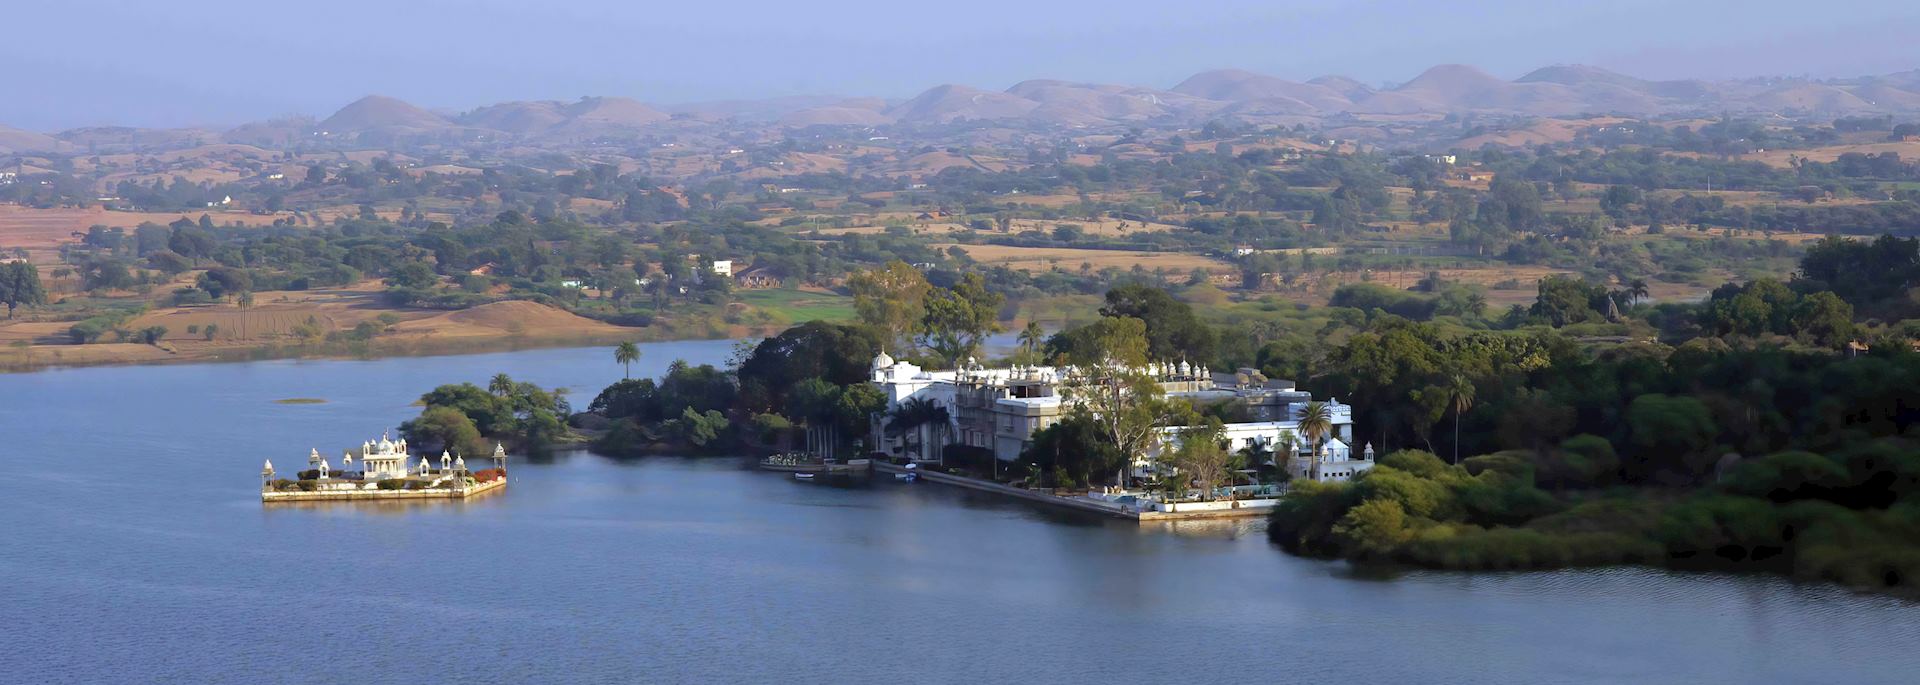 Aerial view of Udai Bilas Palace, Dungarpur